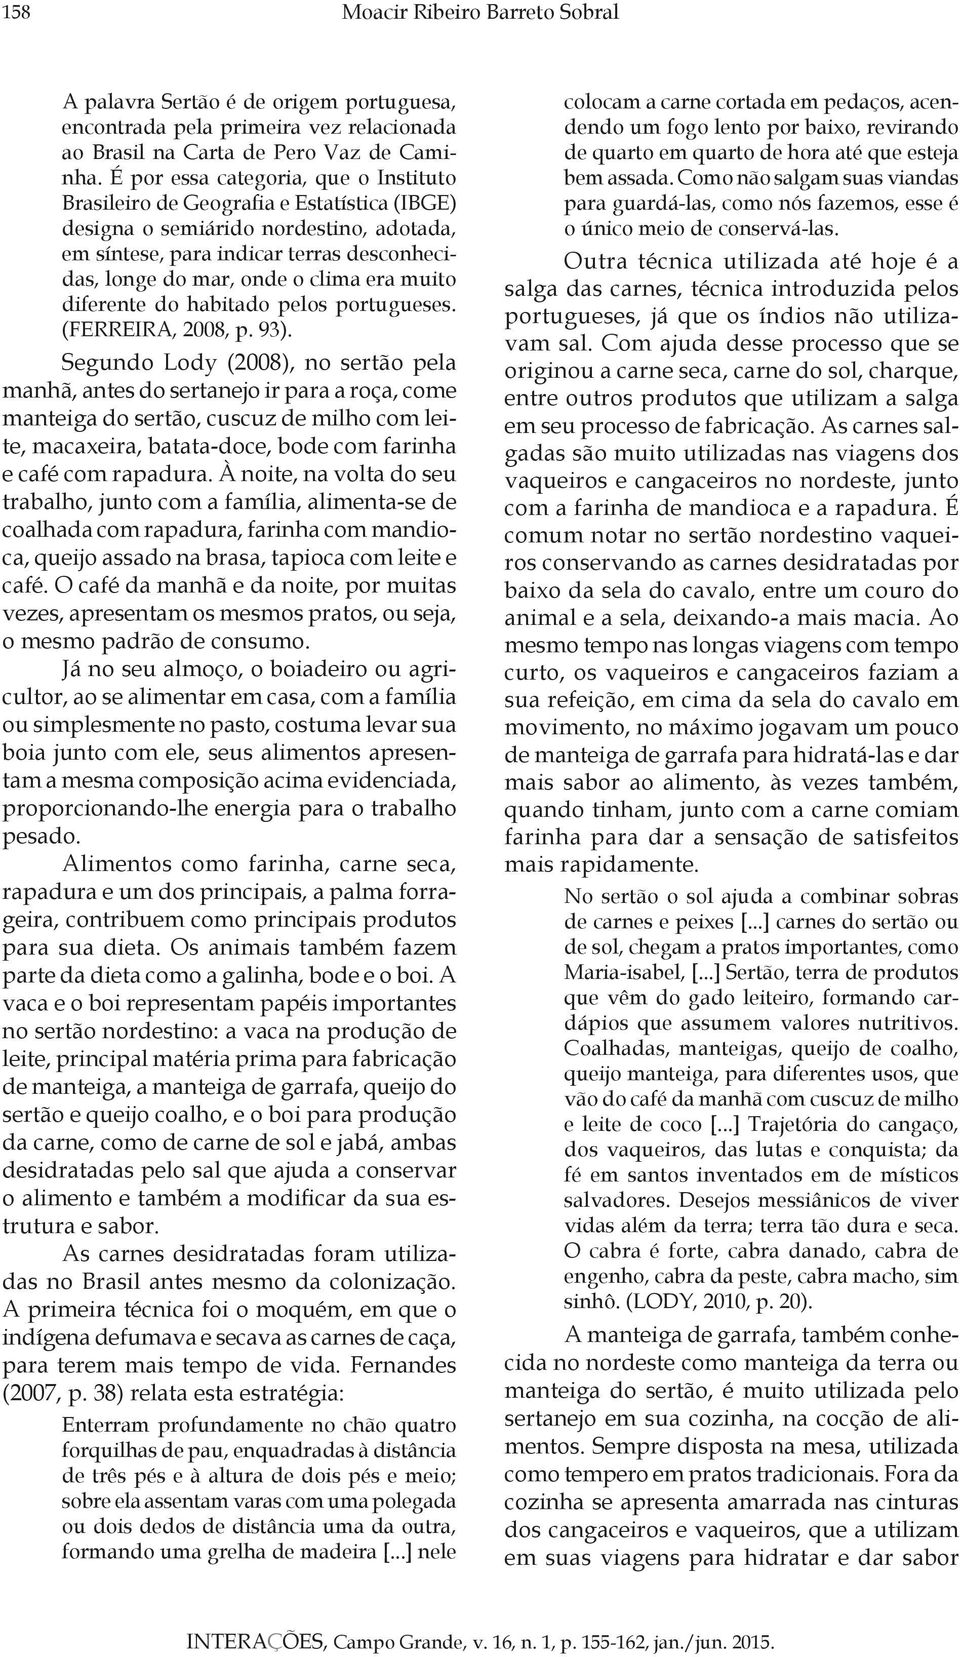 era muito diferente do habitado pelos portugueses. (FERREIRA, 2008, p. 93).